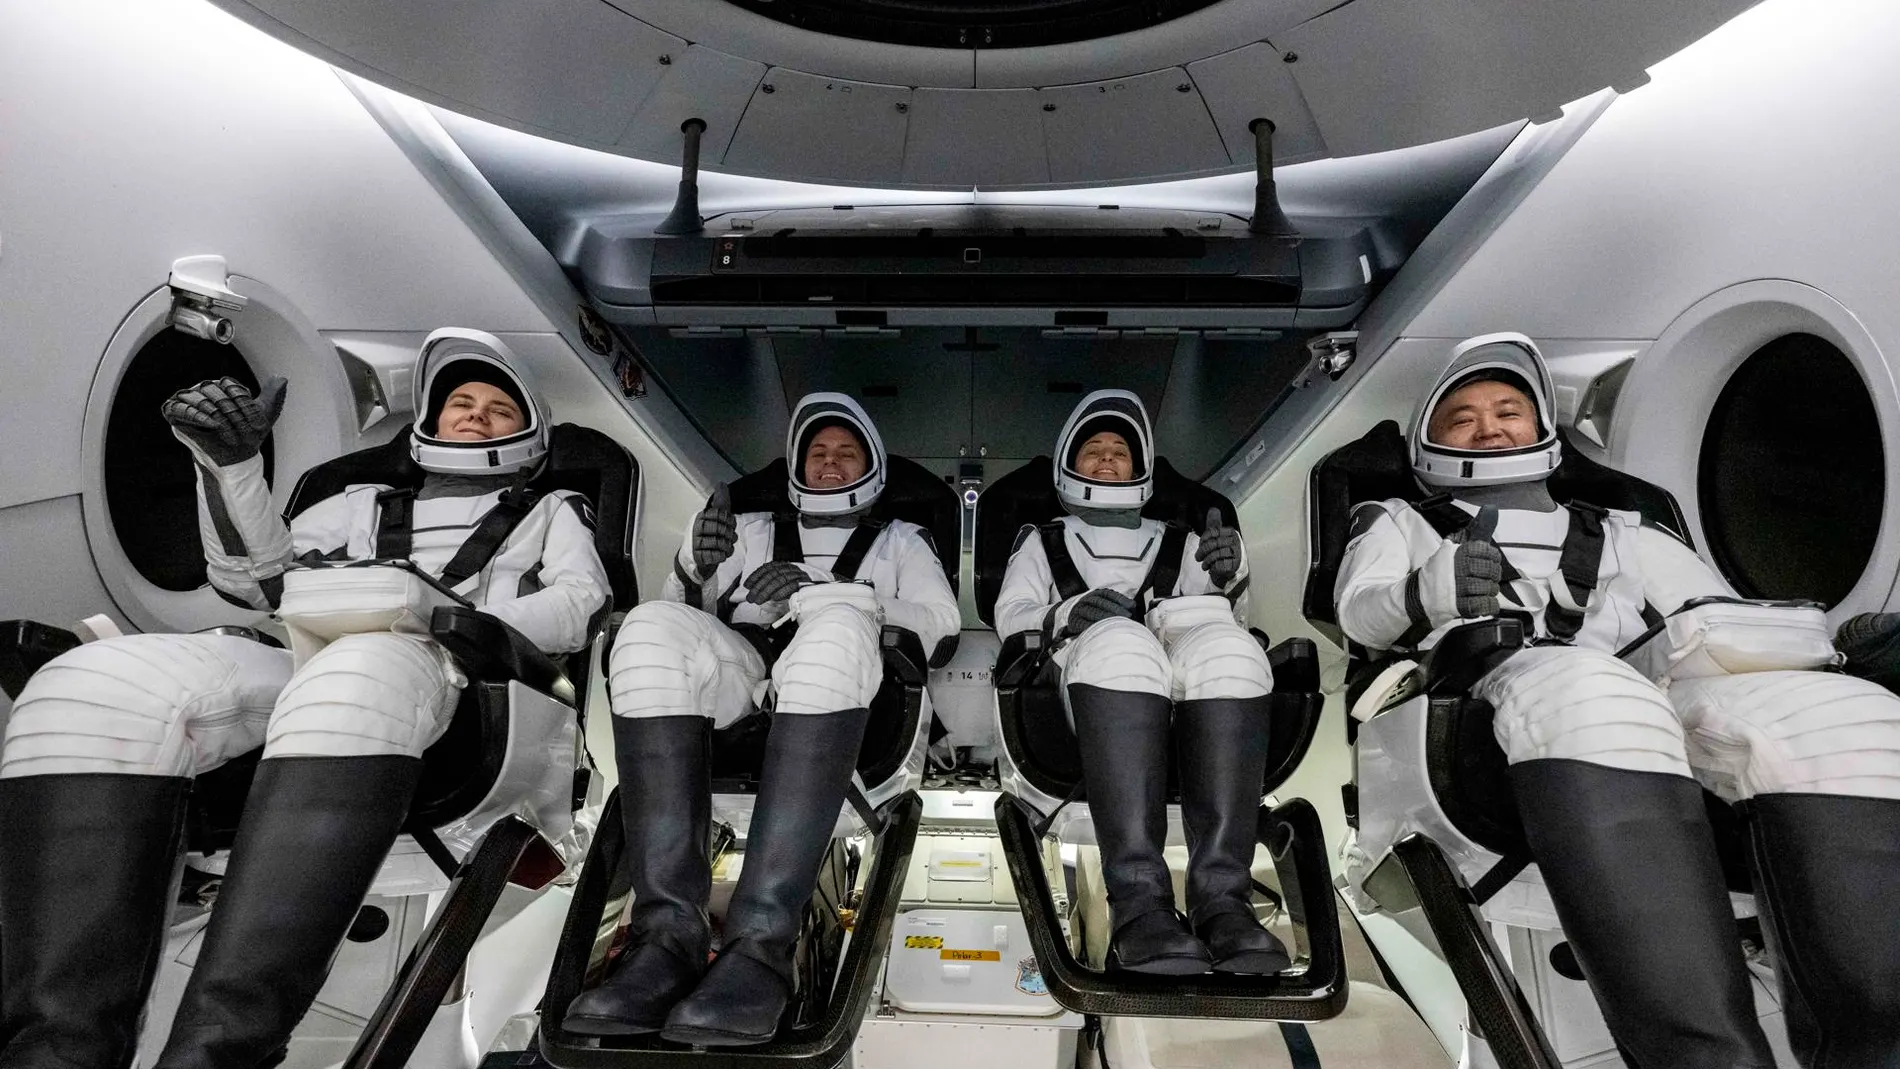 Los cuatro astronautas a bordo de la nave de recuperación de SpaceX Shannon después de haber aterrizado en el Golfo de México.